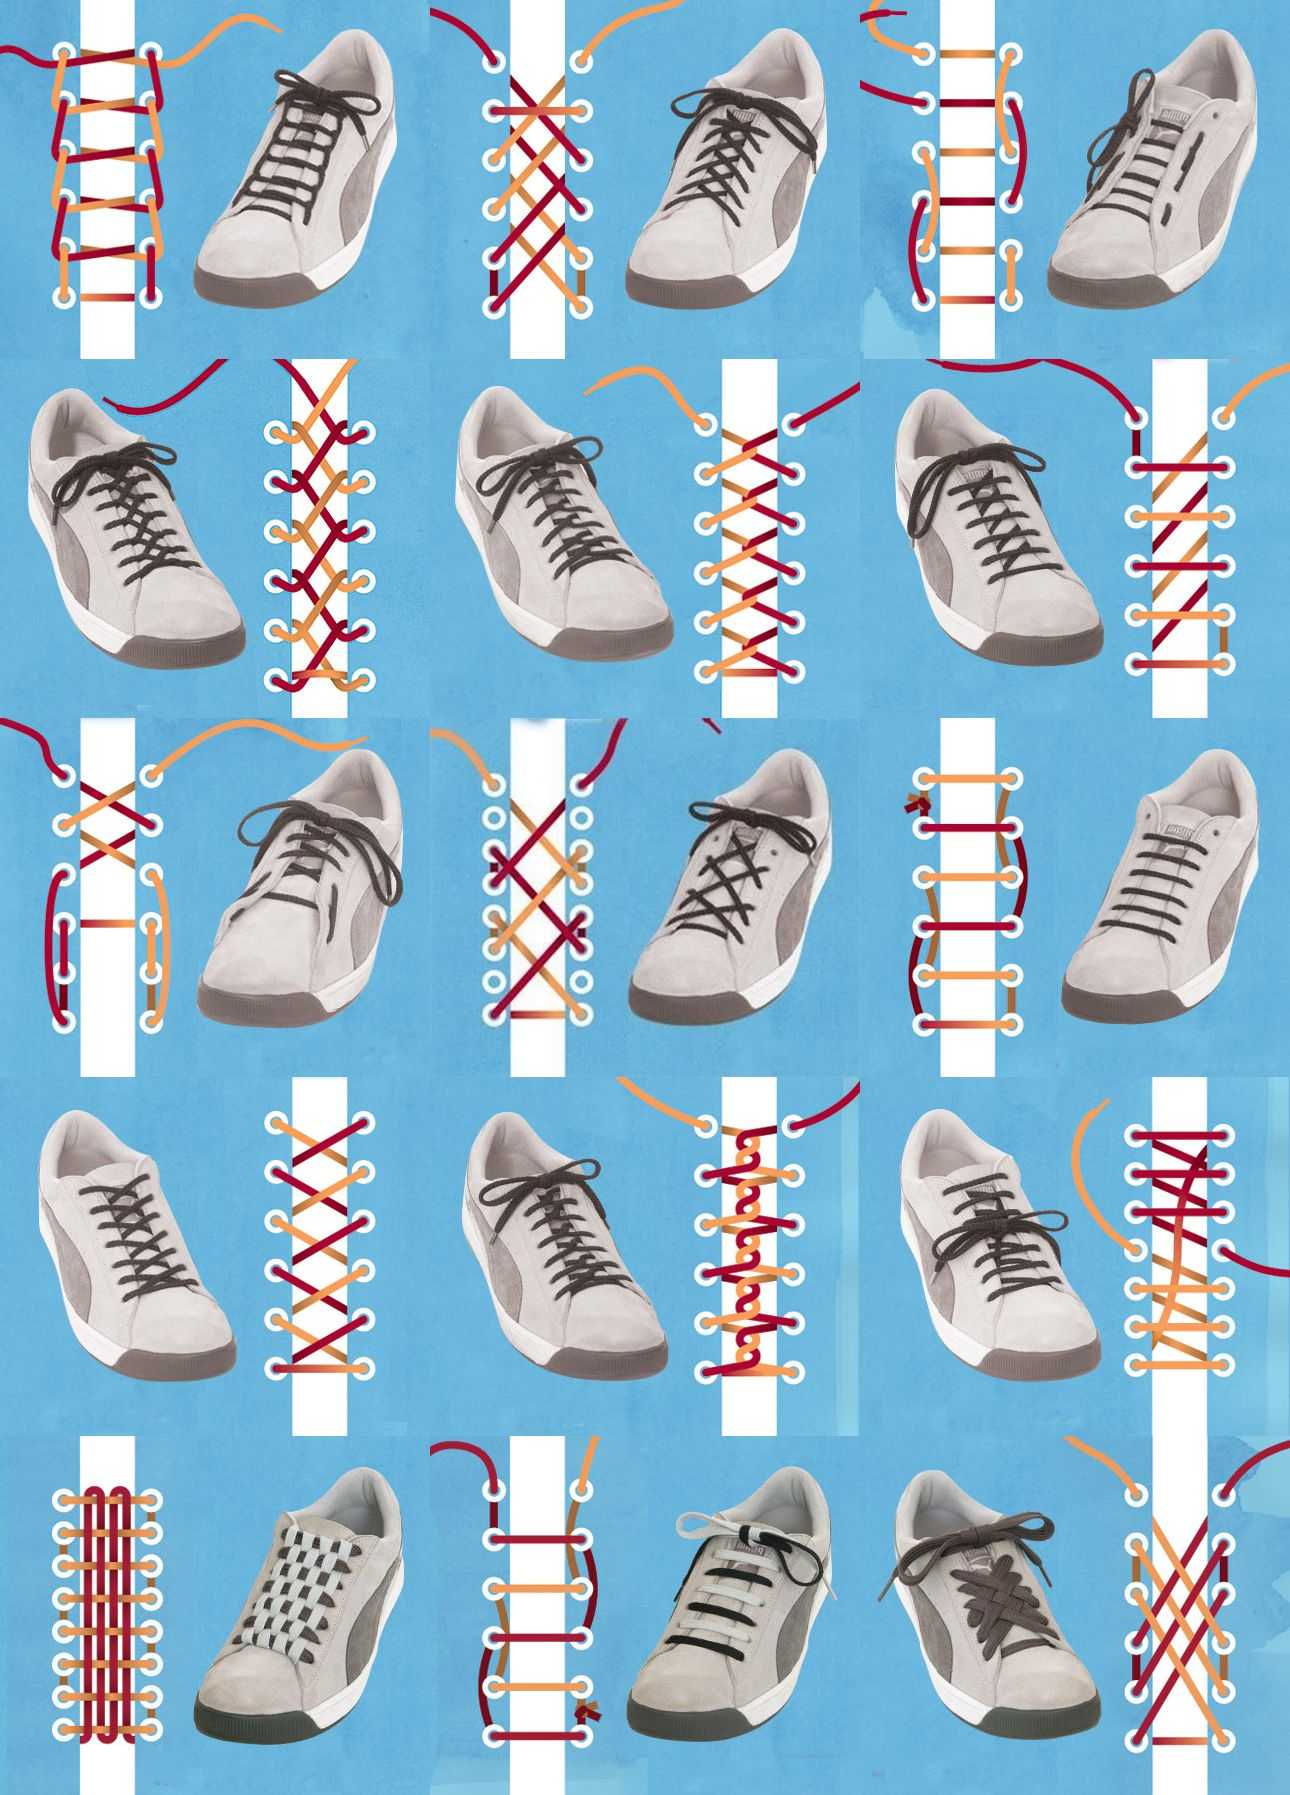 Как красиво завязать шнурки на кроссовках 7 дырок женские по шагово фото